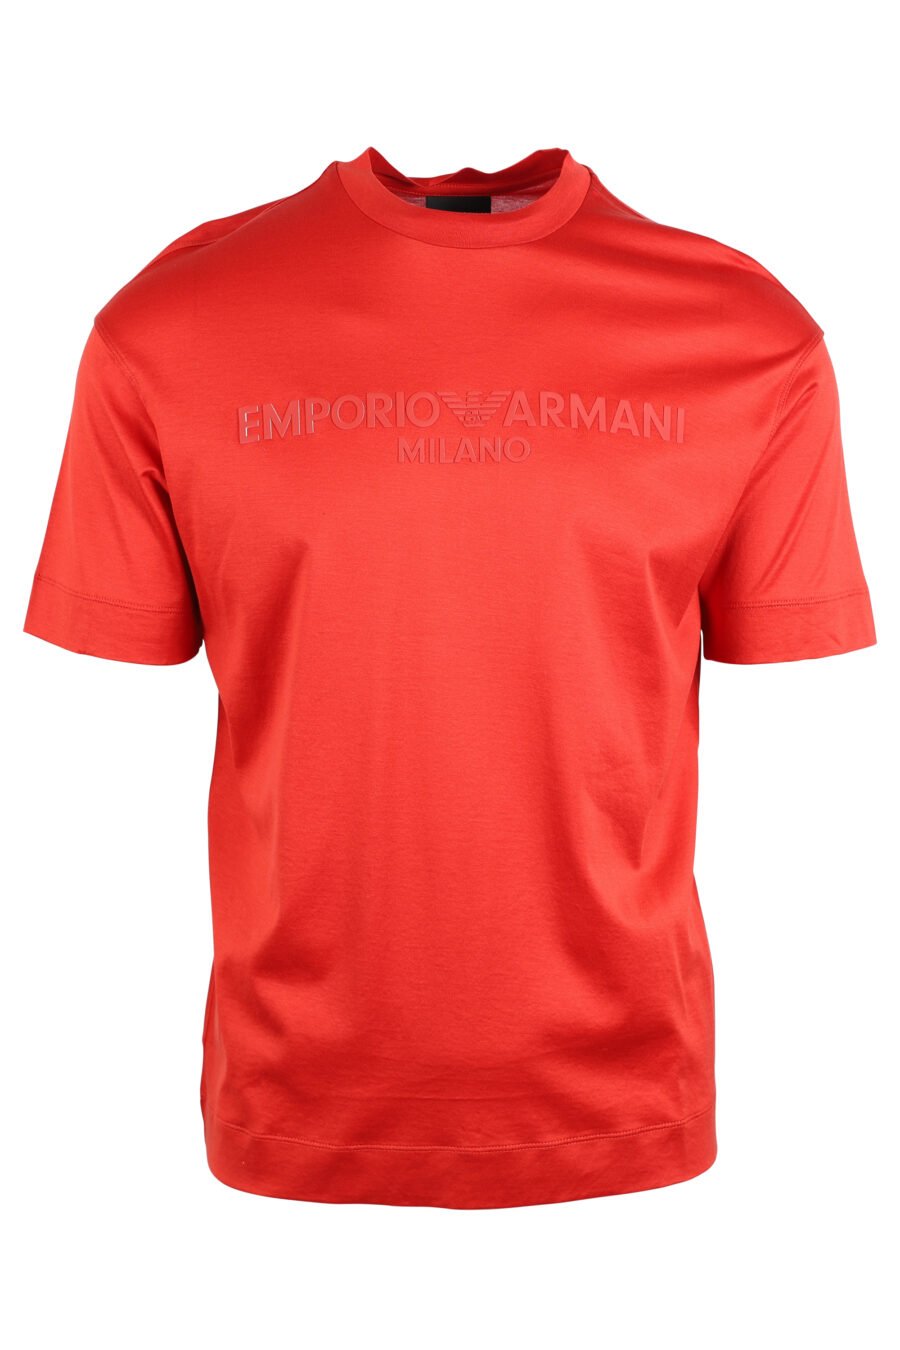 Camiseta roja con maxilogo monocromático - IMG 4747